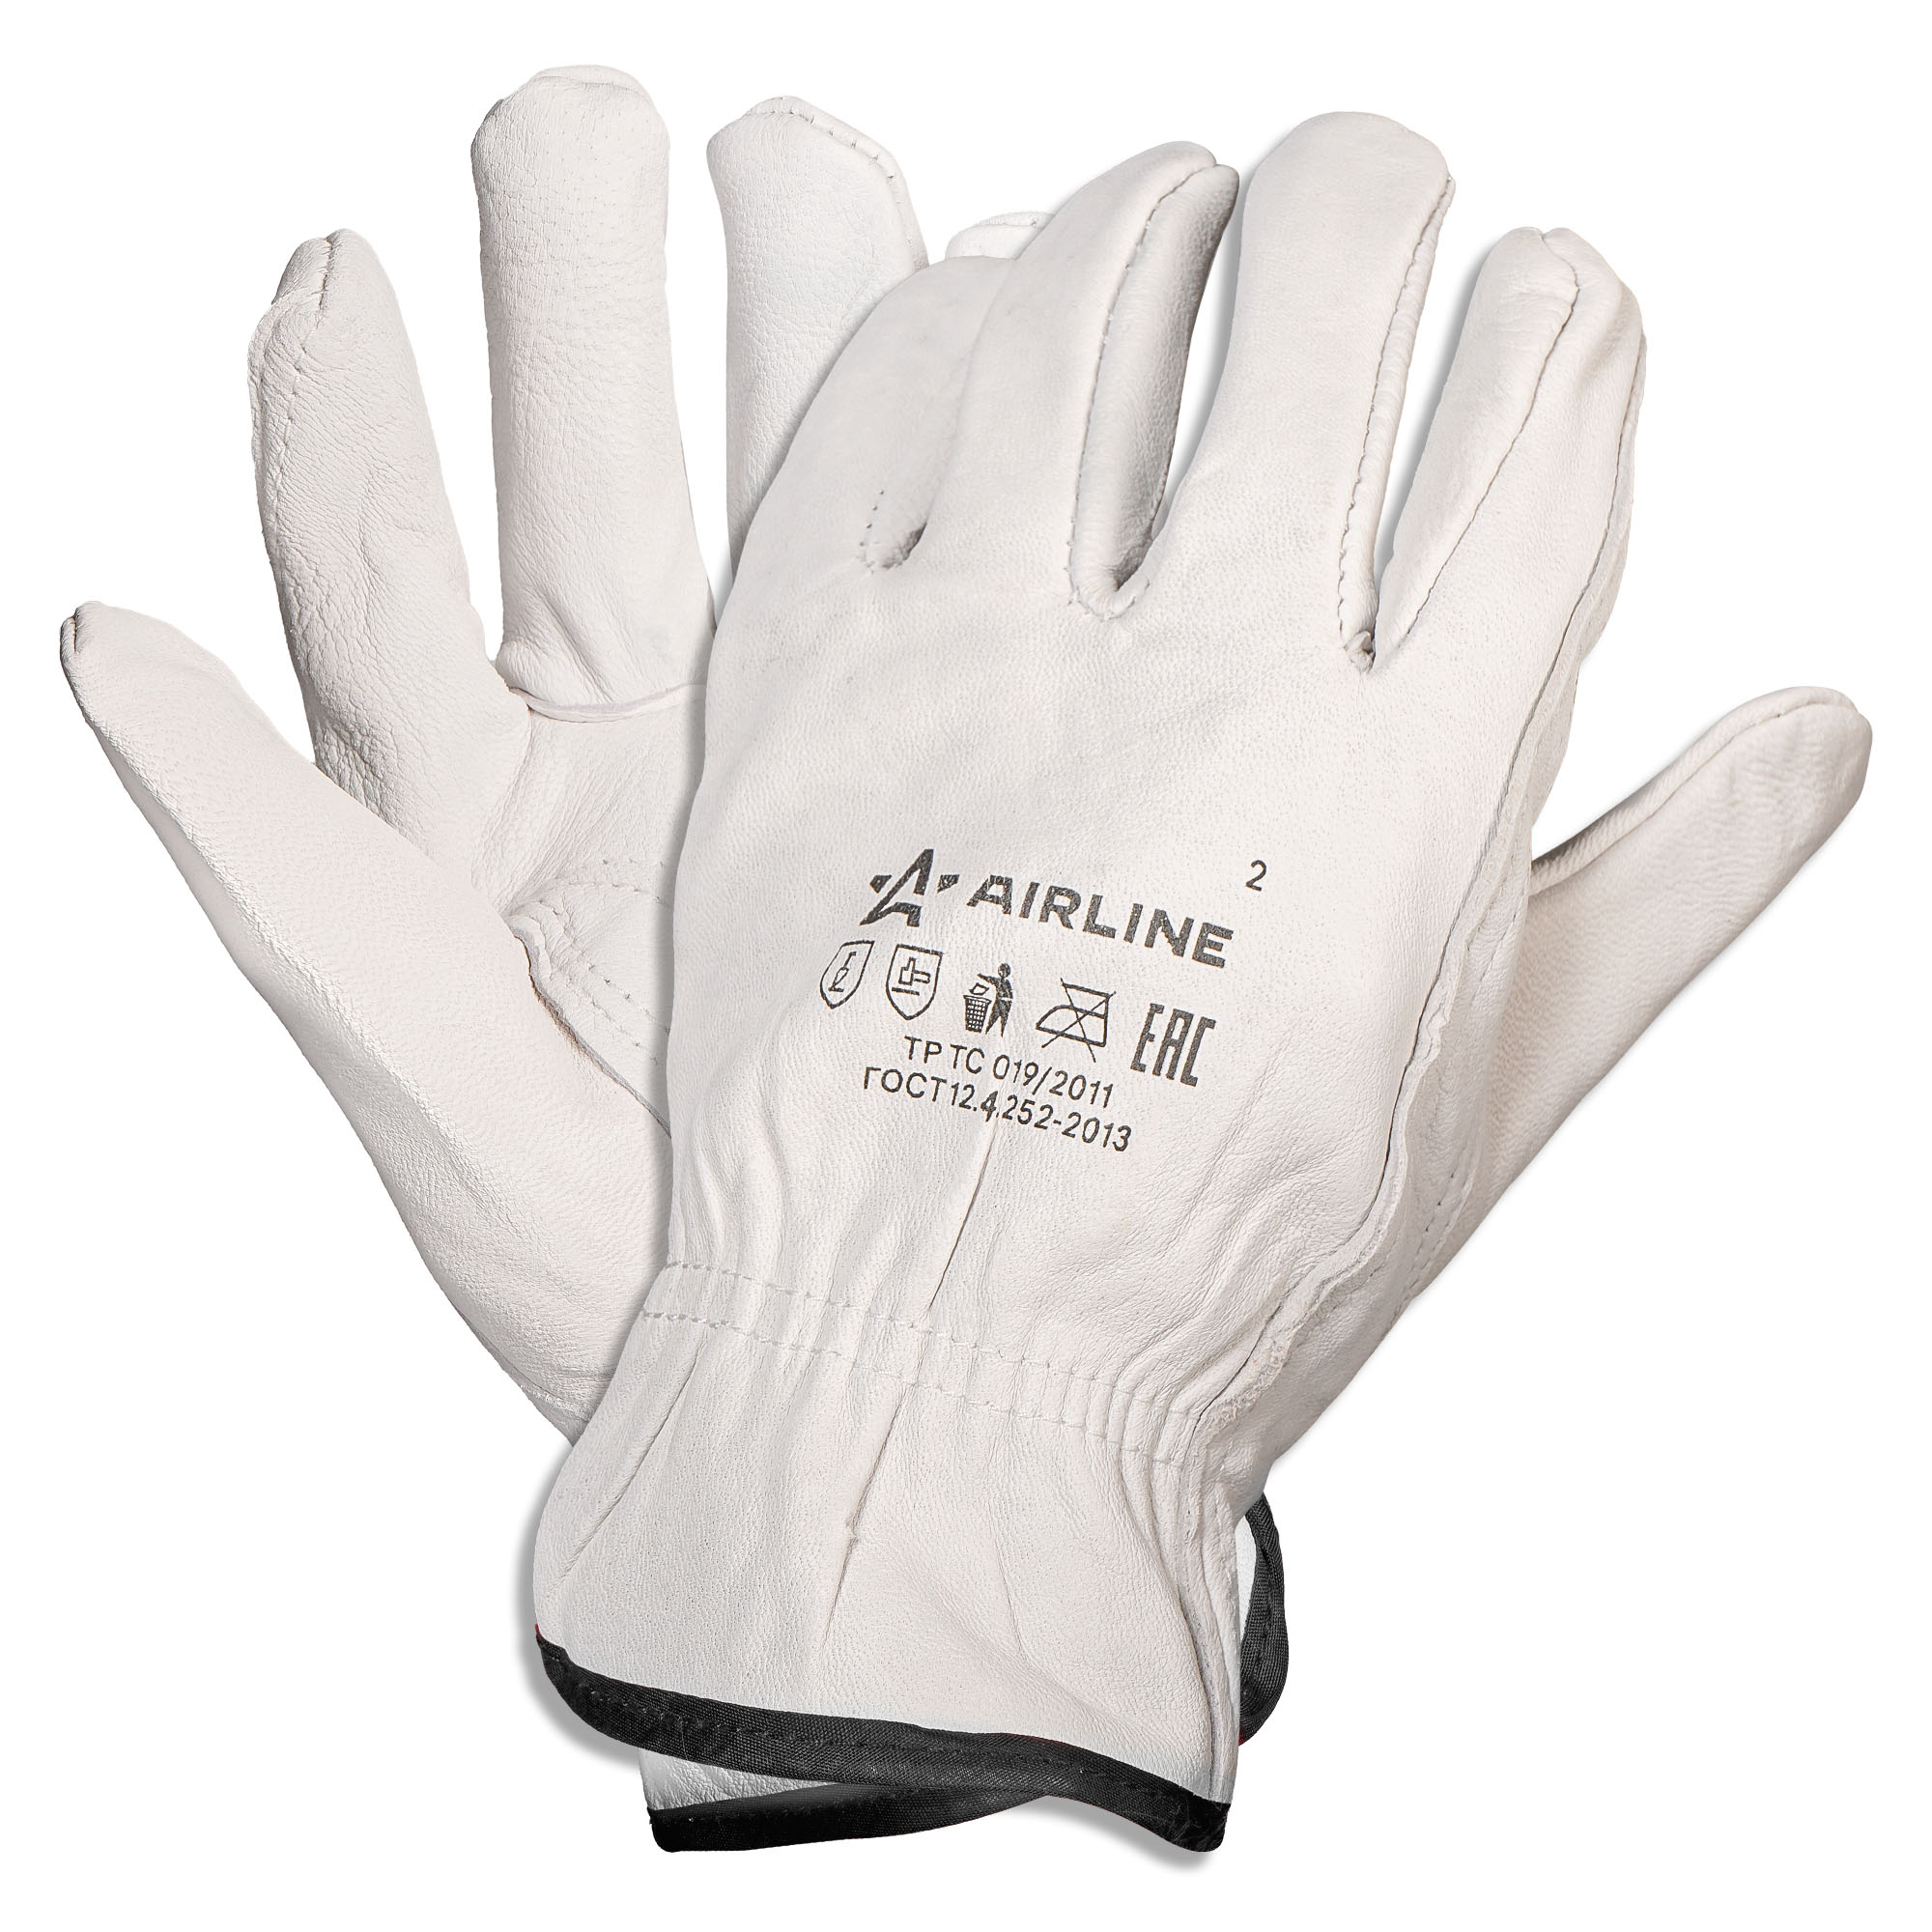 Перчатки водительские, натуральная мягкая кожа (XL) белые - AIRLINE ADWG105